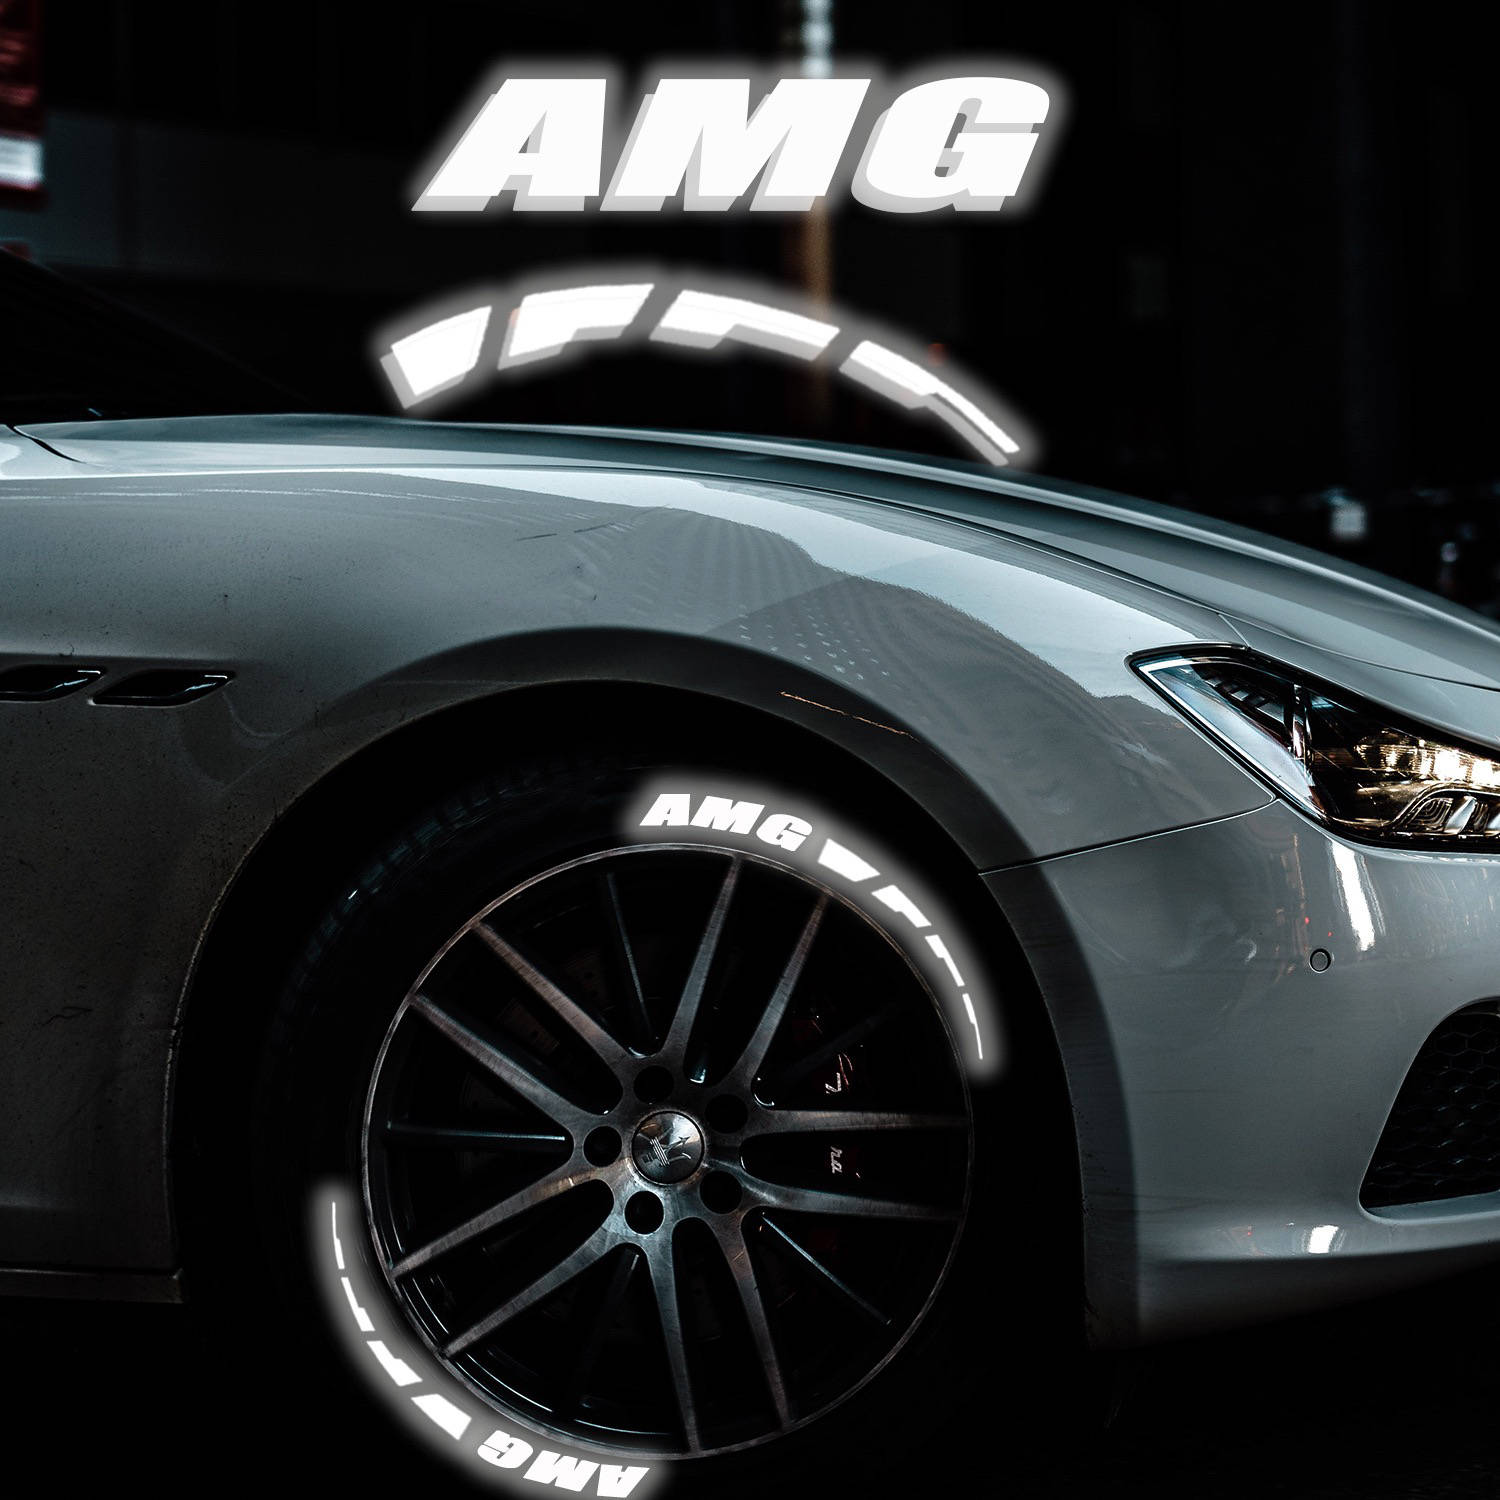 Decoração Refletiva para pneus com a palavra amg para mercedes personalização vistosa e luminosa para a roda do carro